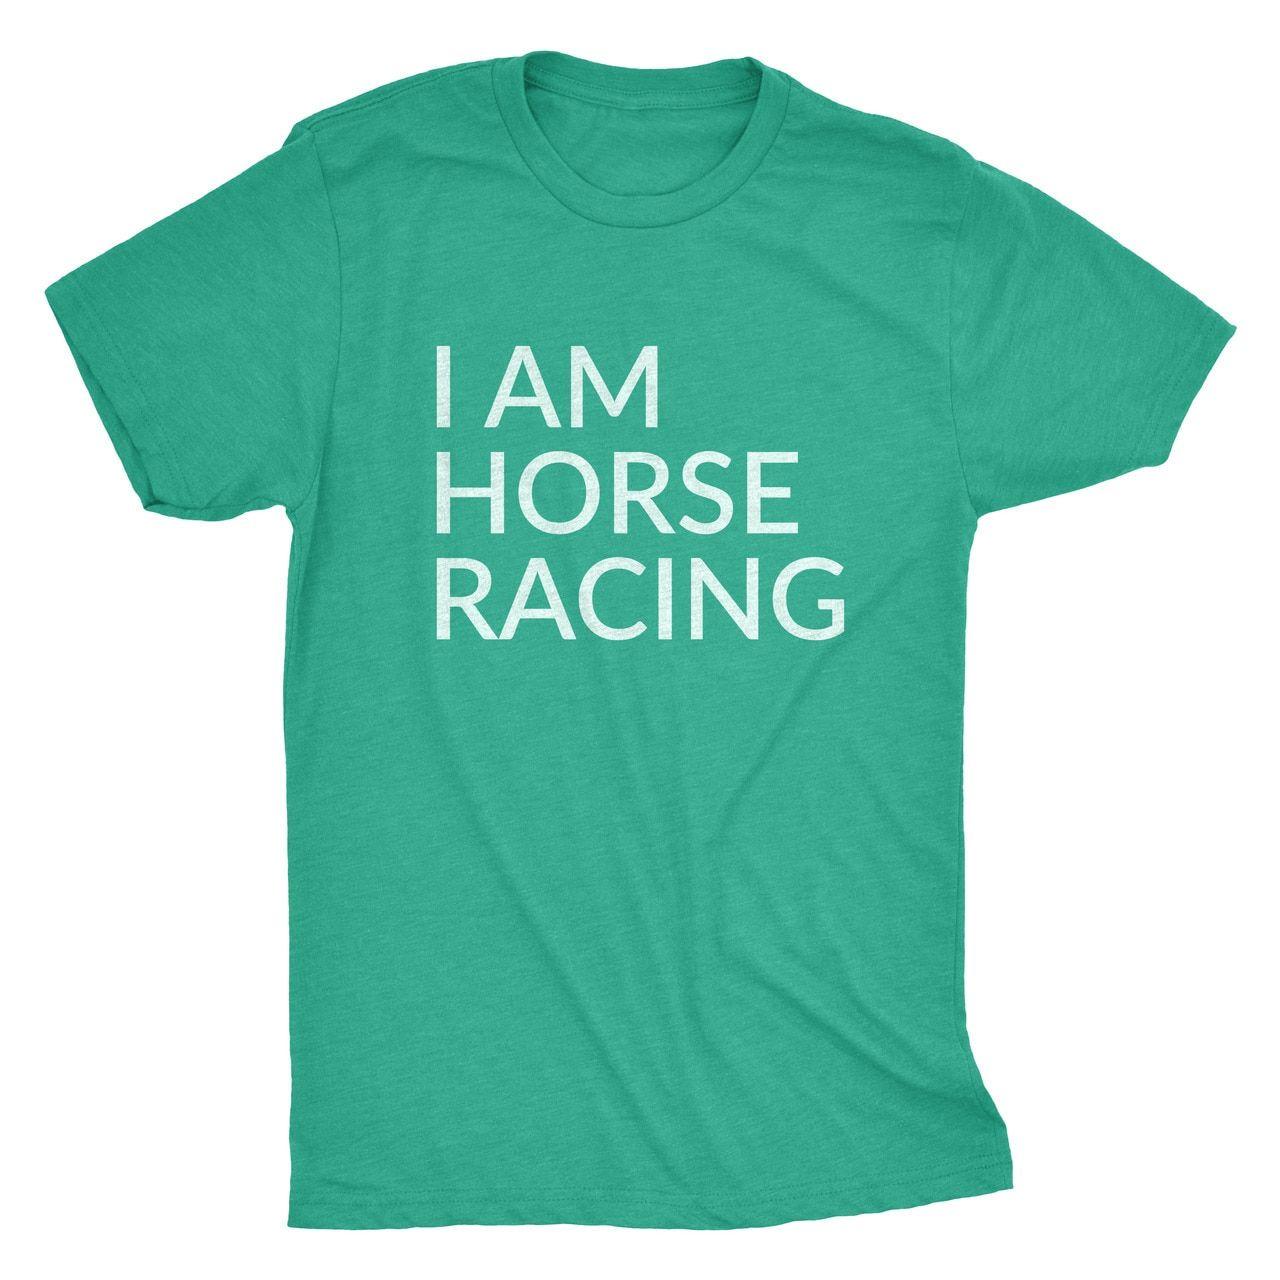 Tee Logo - I AM HORSE RACING TEE GREEN